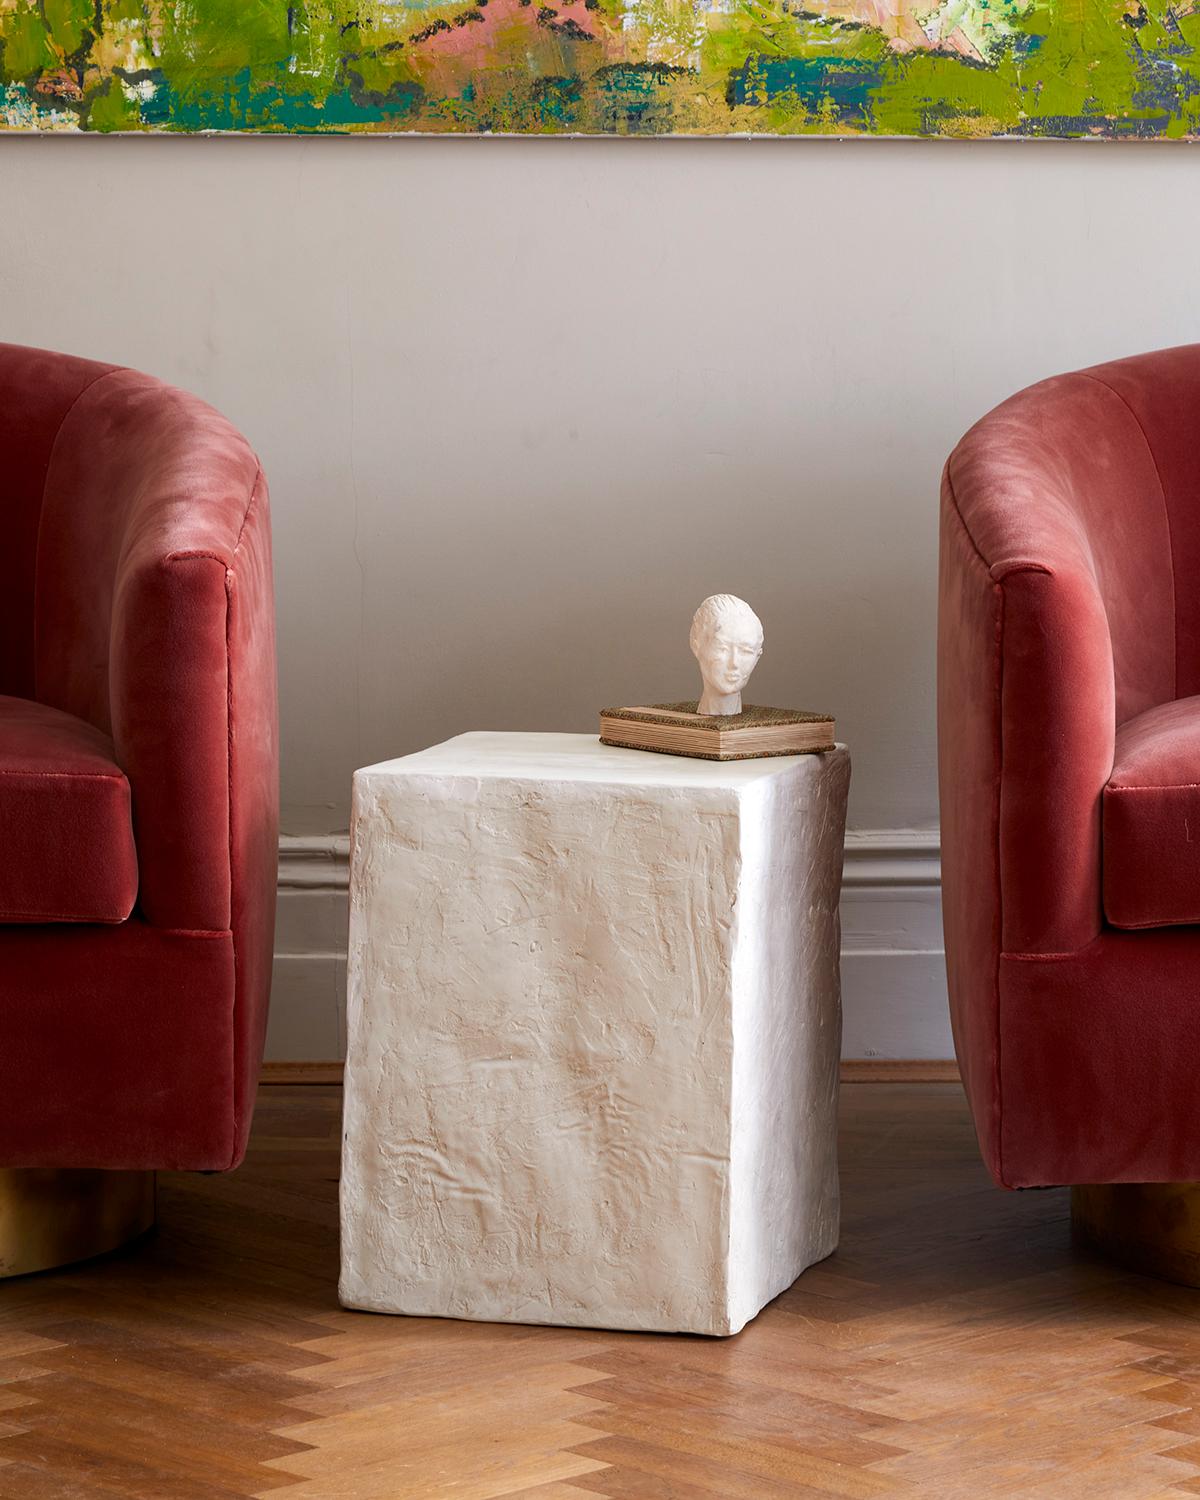 
Le Manhattan cube est une table d'appoint d'une simplicité trompeuse, créée par l'artiste designer Margit Wittig, qui peut se transformer en siège sculptural.
Il reproduit une forme que Margit affectionne et qu'elle a déjà utilisée dans des